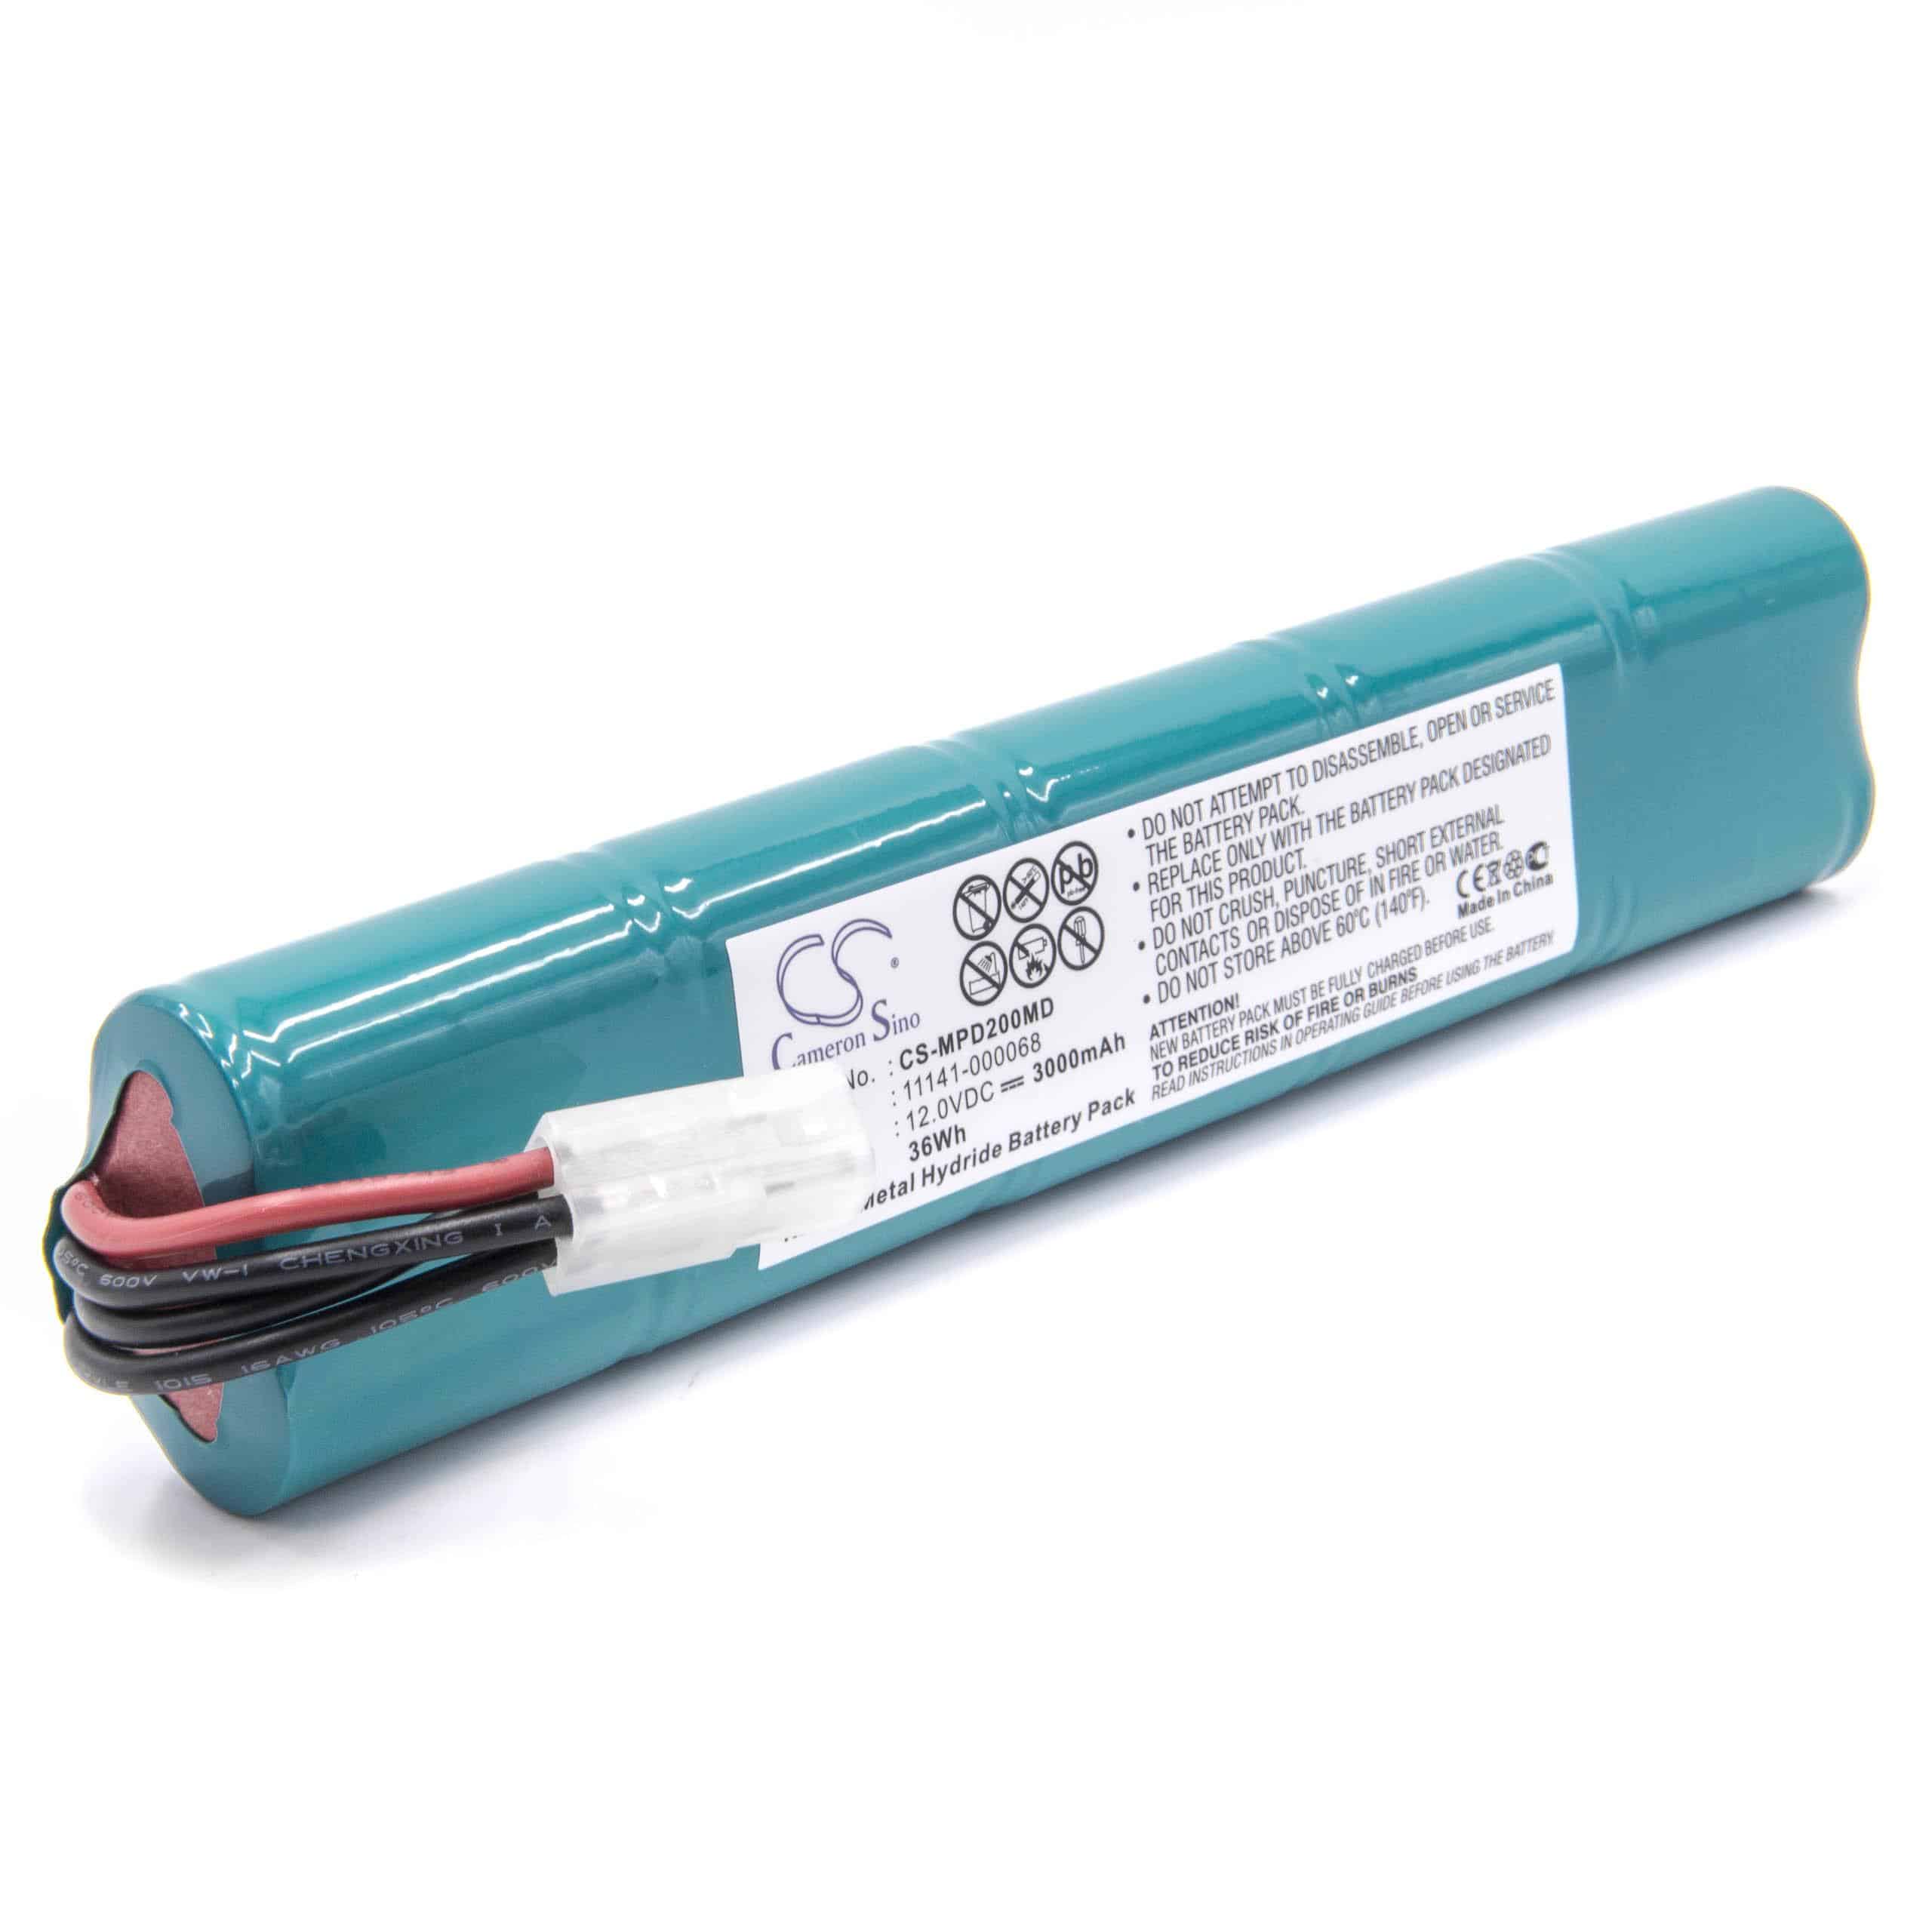 Batterie remplace Medtronic 3200497-000, 10HR-SCU, 14200330 pour appareil médical - 3000mAh 12V NiMH